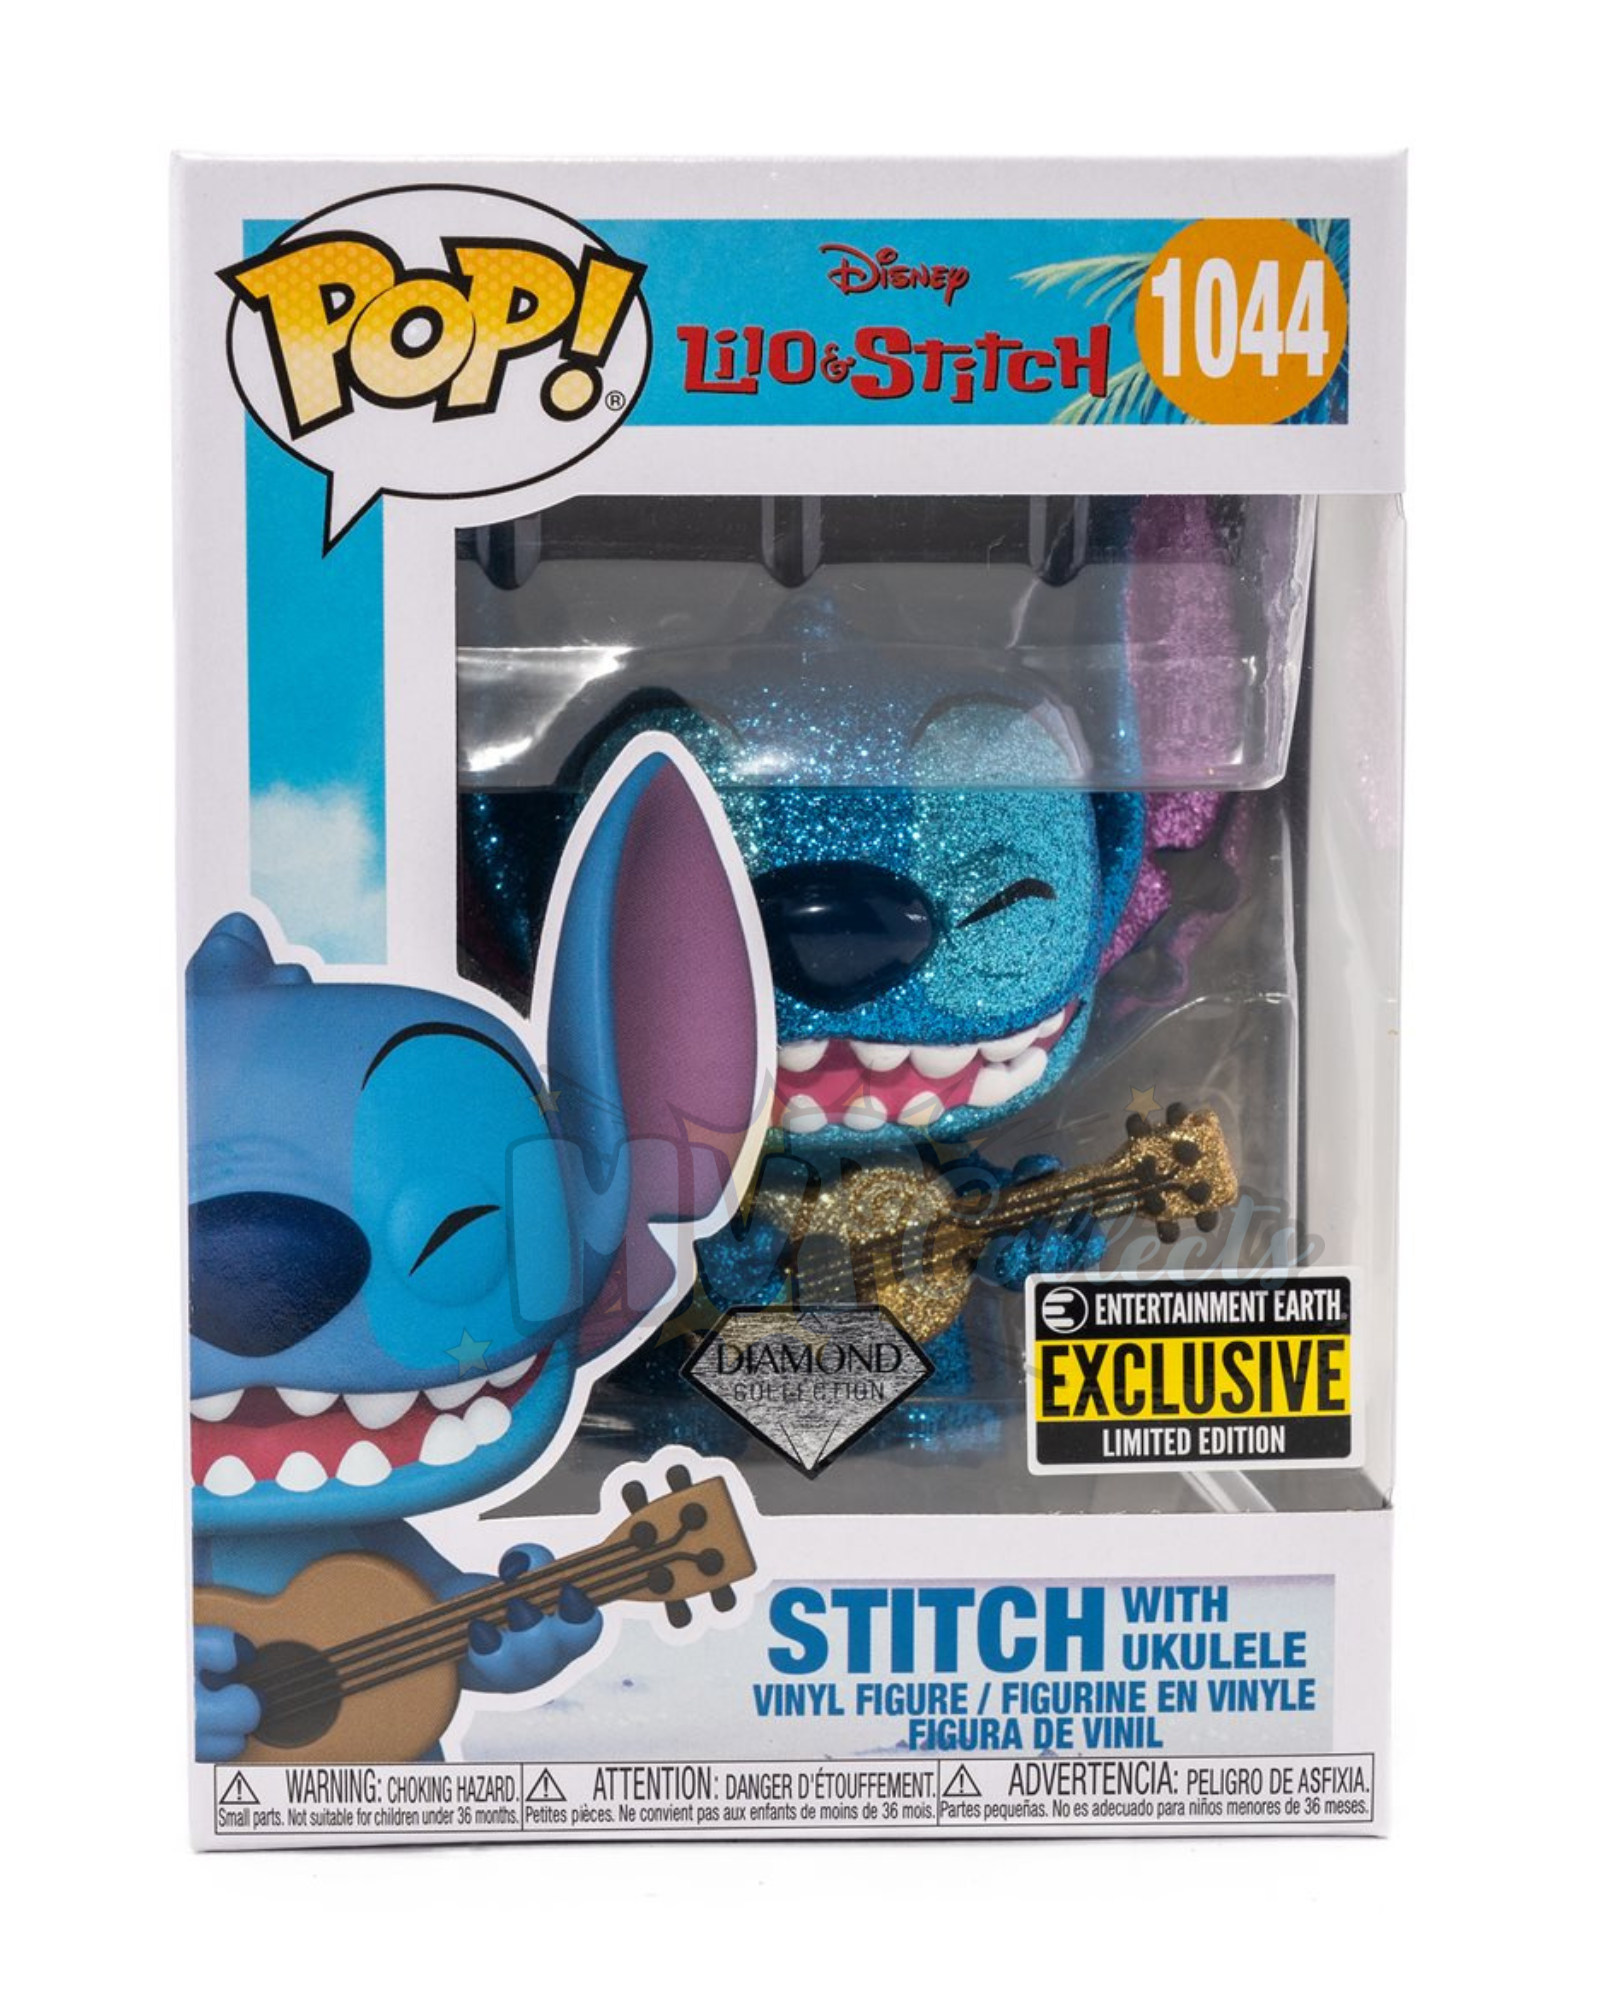 Stitch with Ukelele Diamond Funko POP! (Lilo & Stitch) #1044